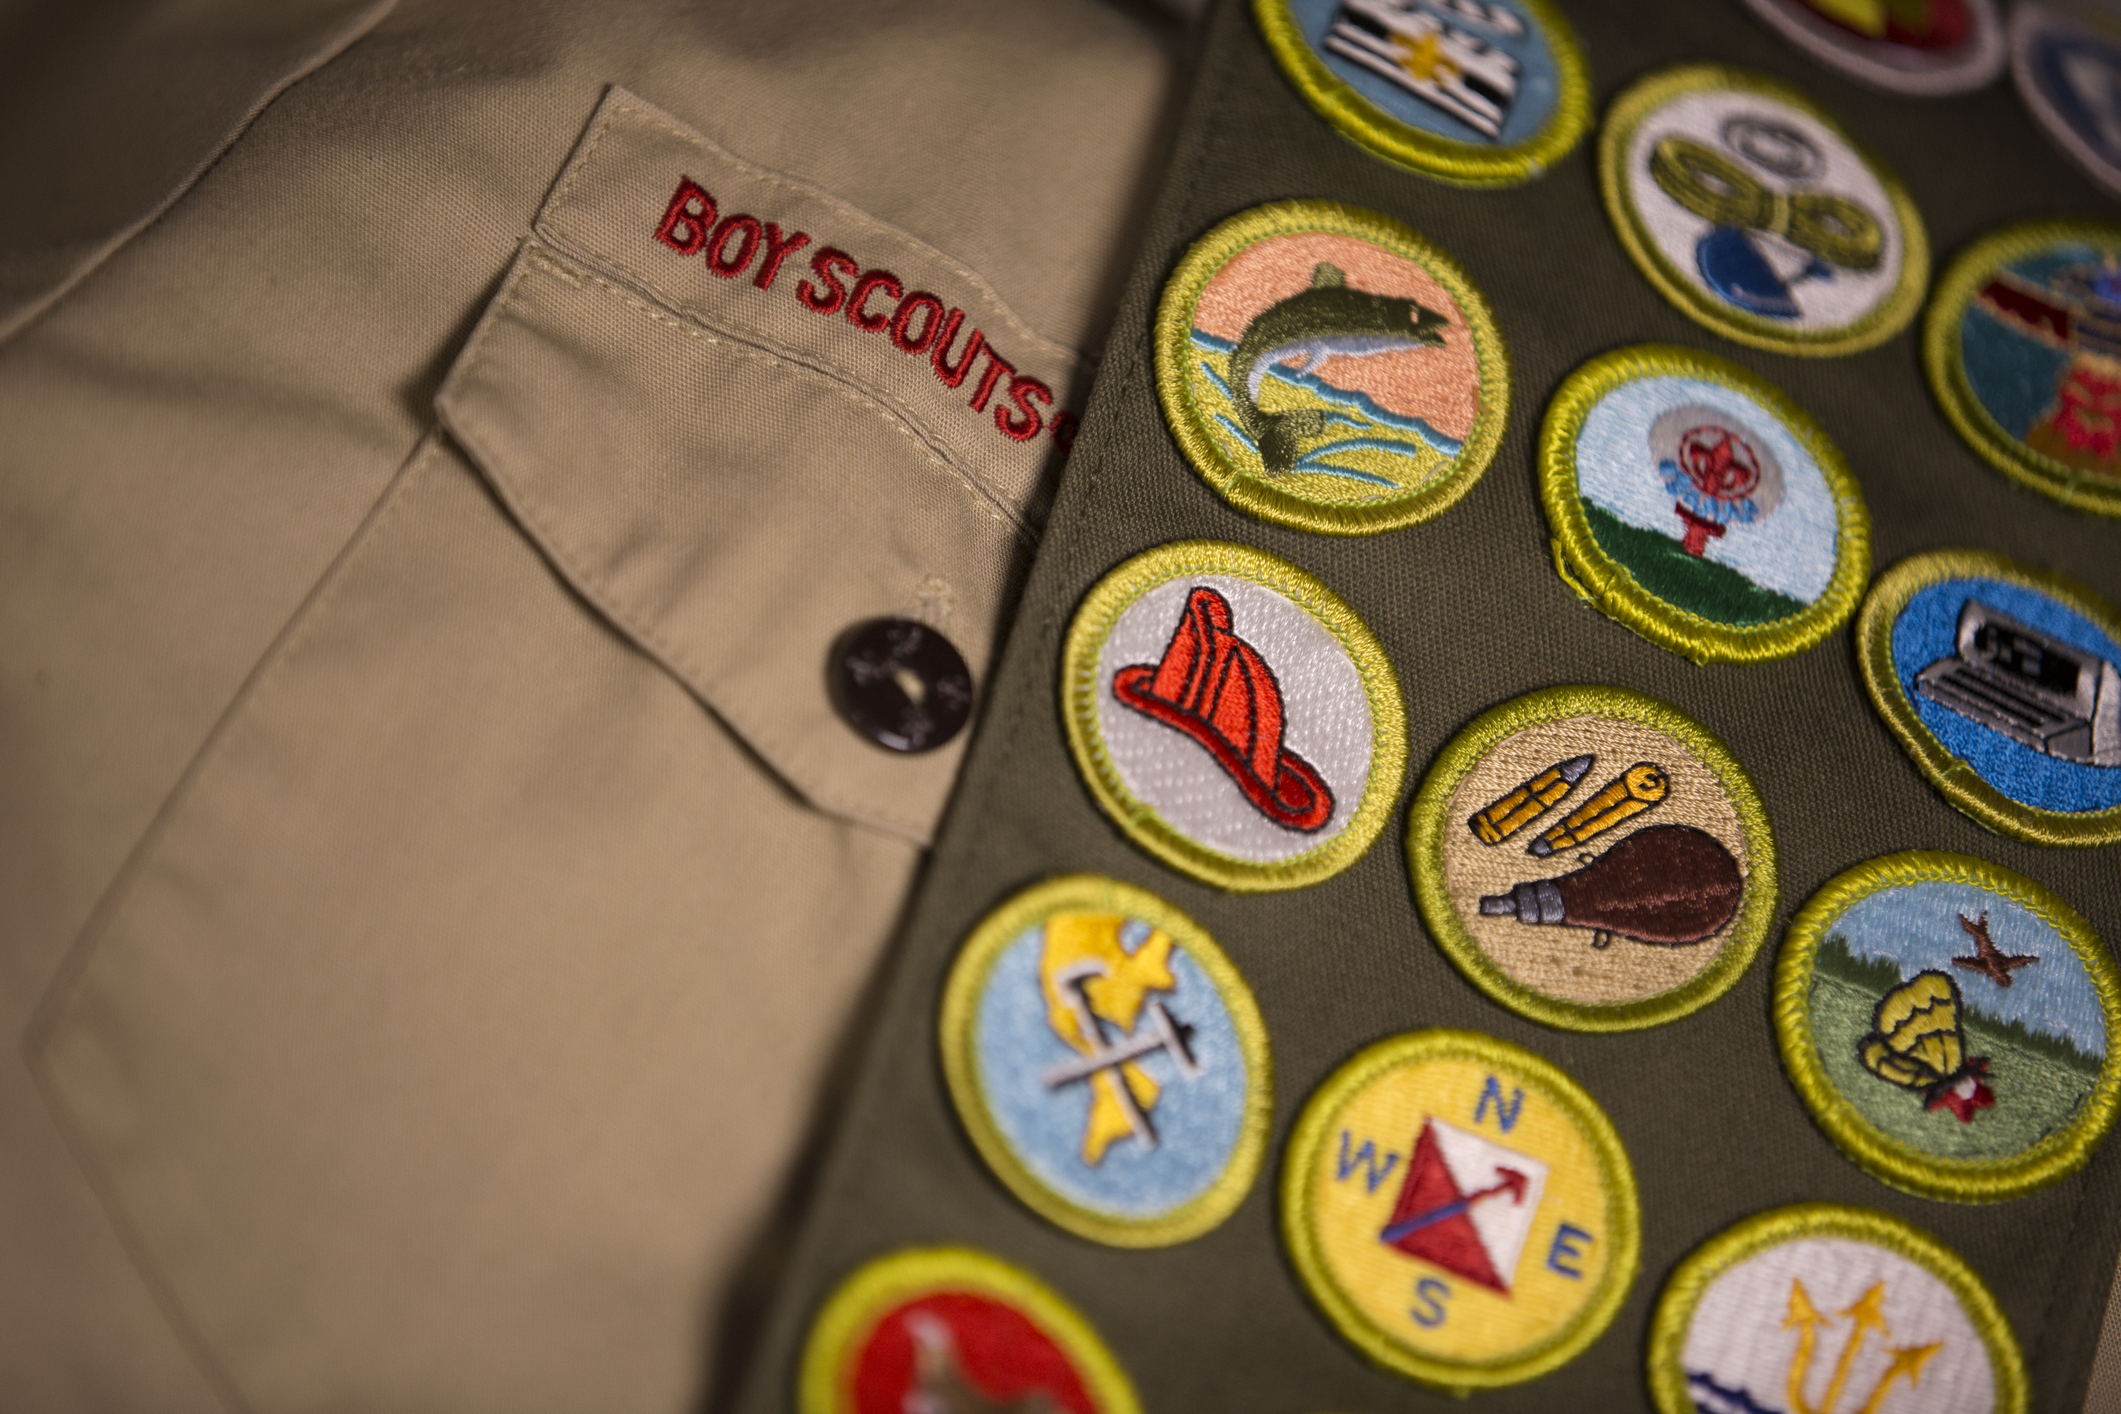 Merit badges on Boy Scout uniform